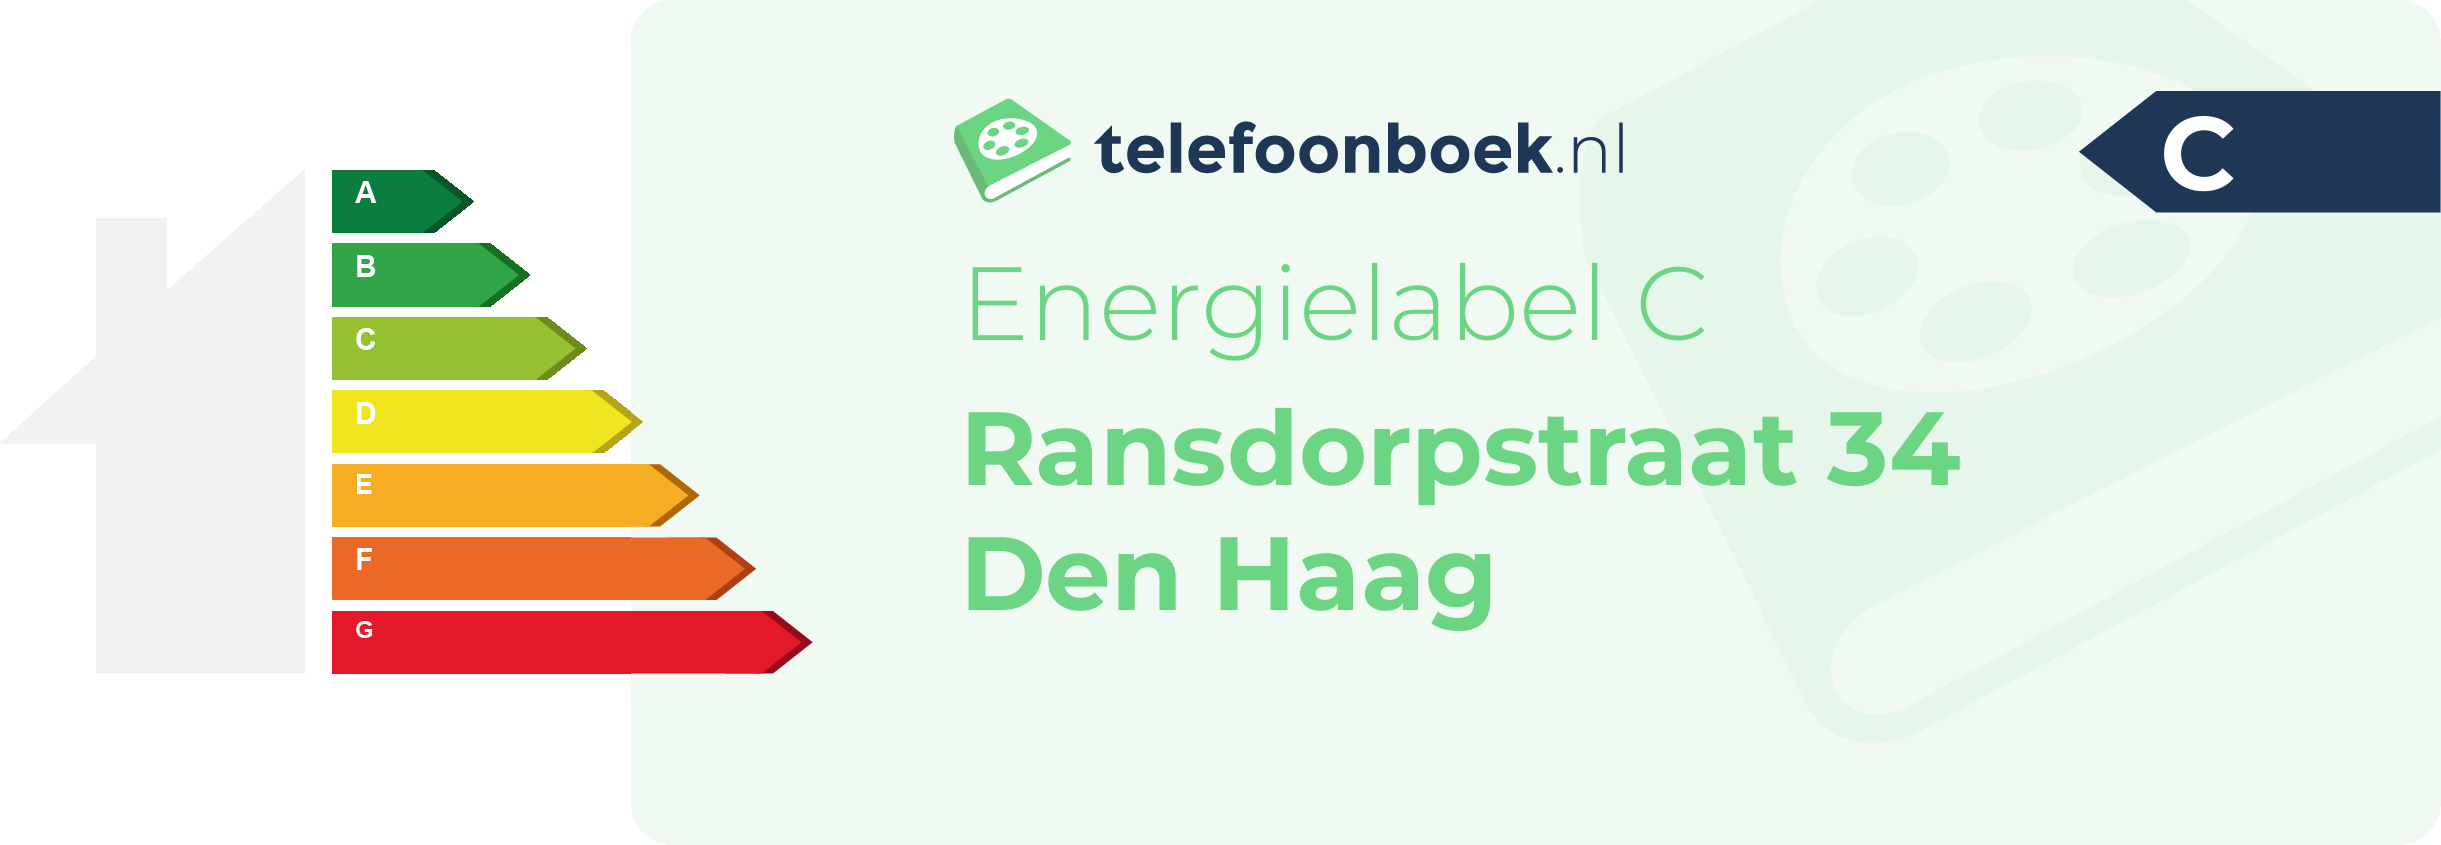 Energielabel Ransdorpstraat 34 Den Haag